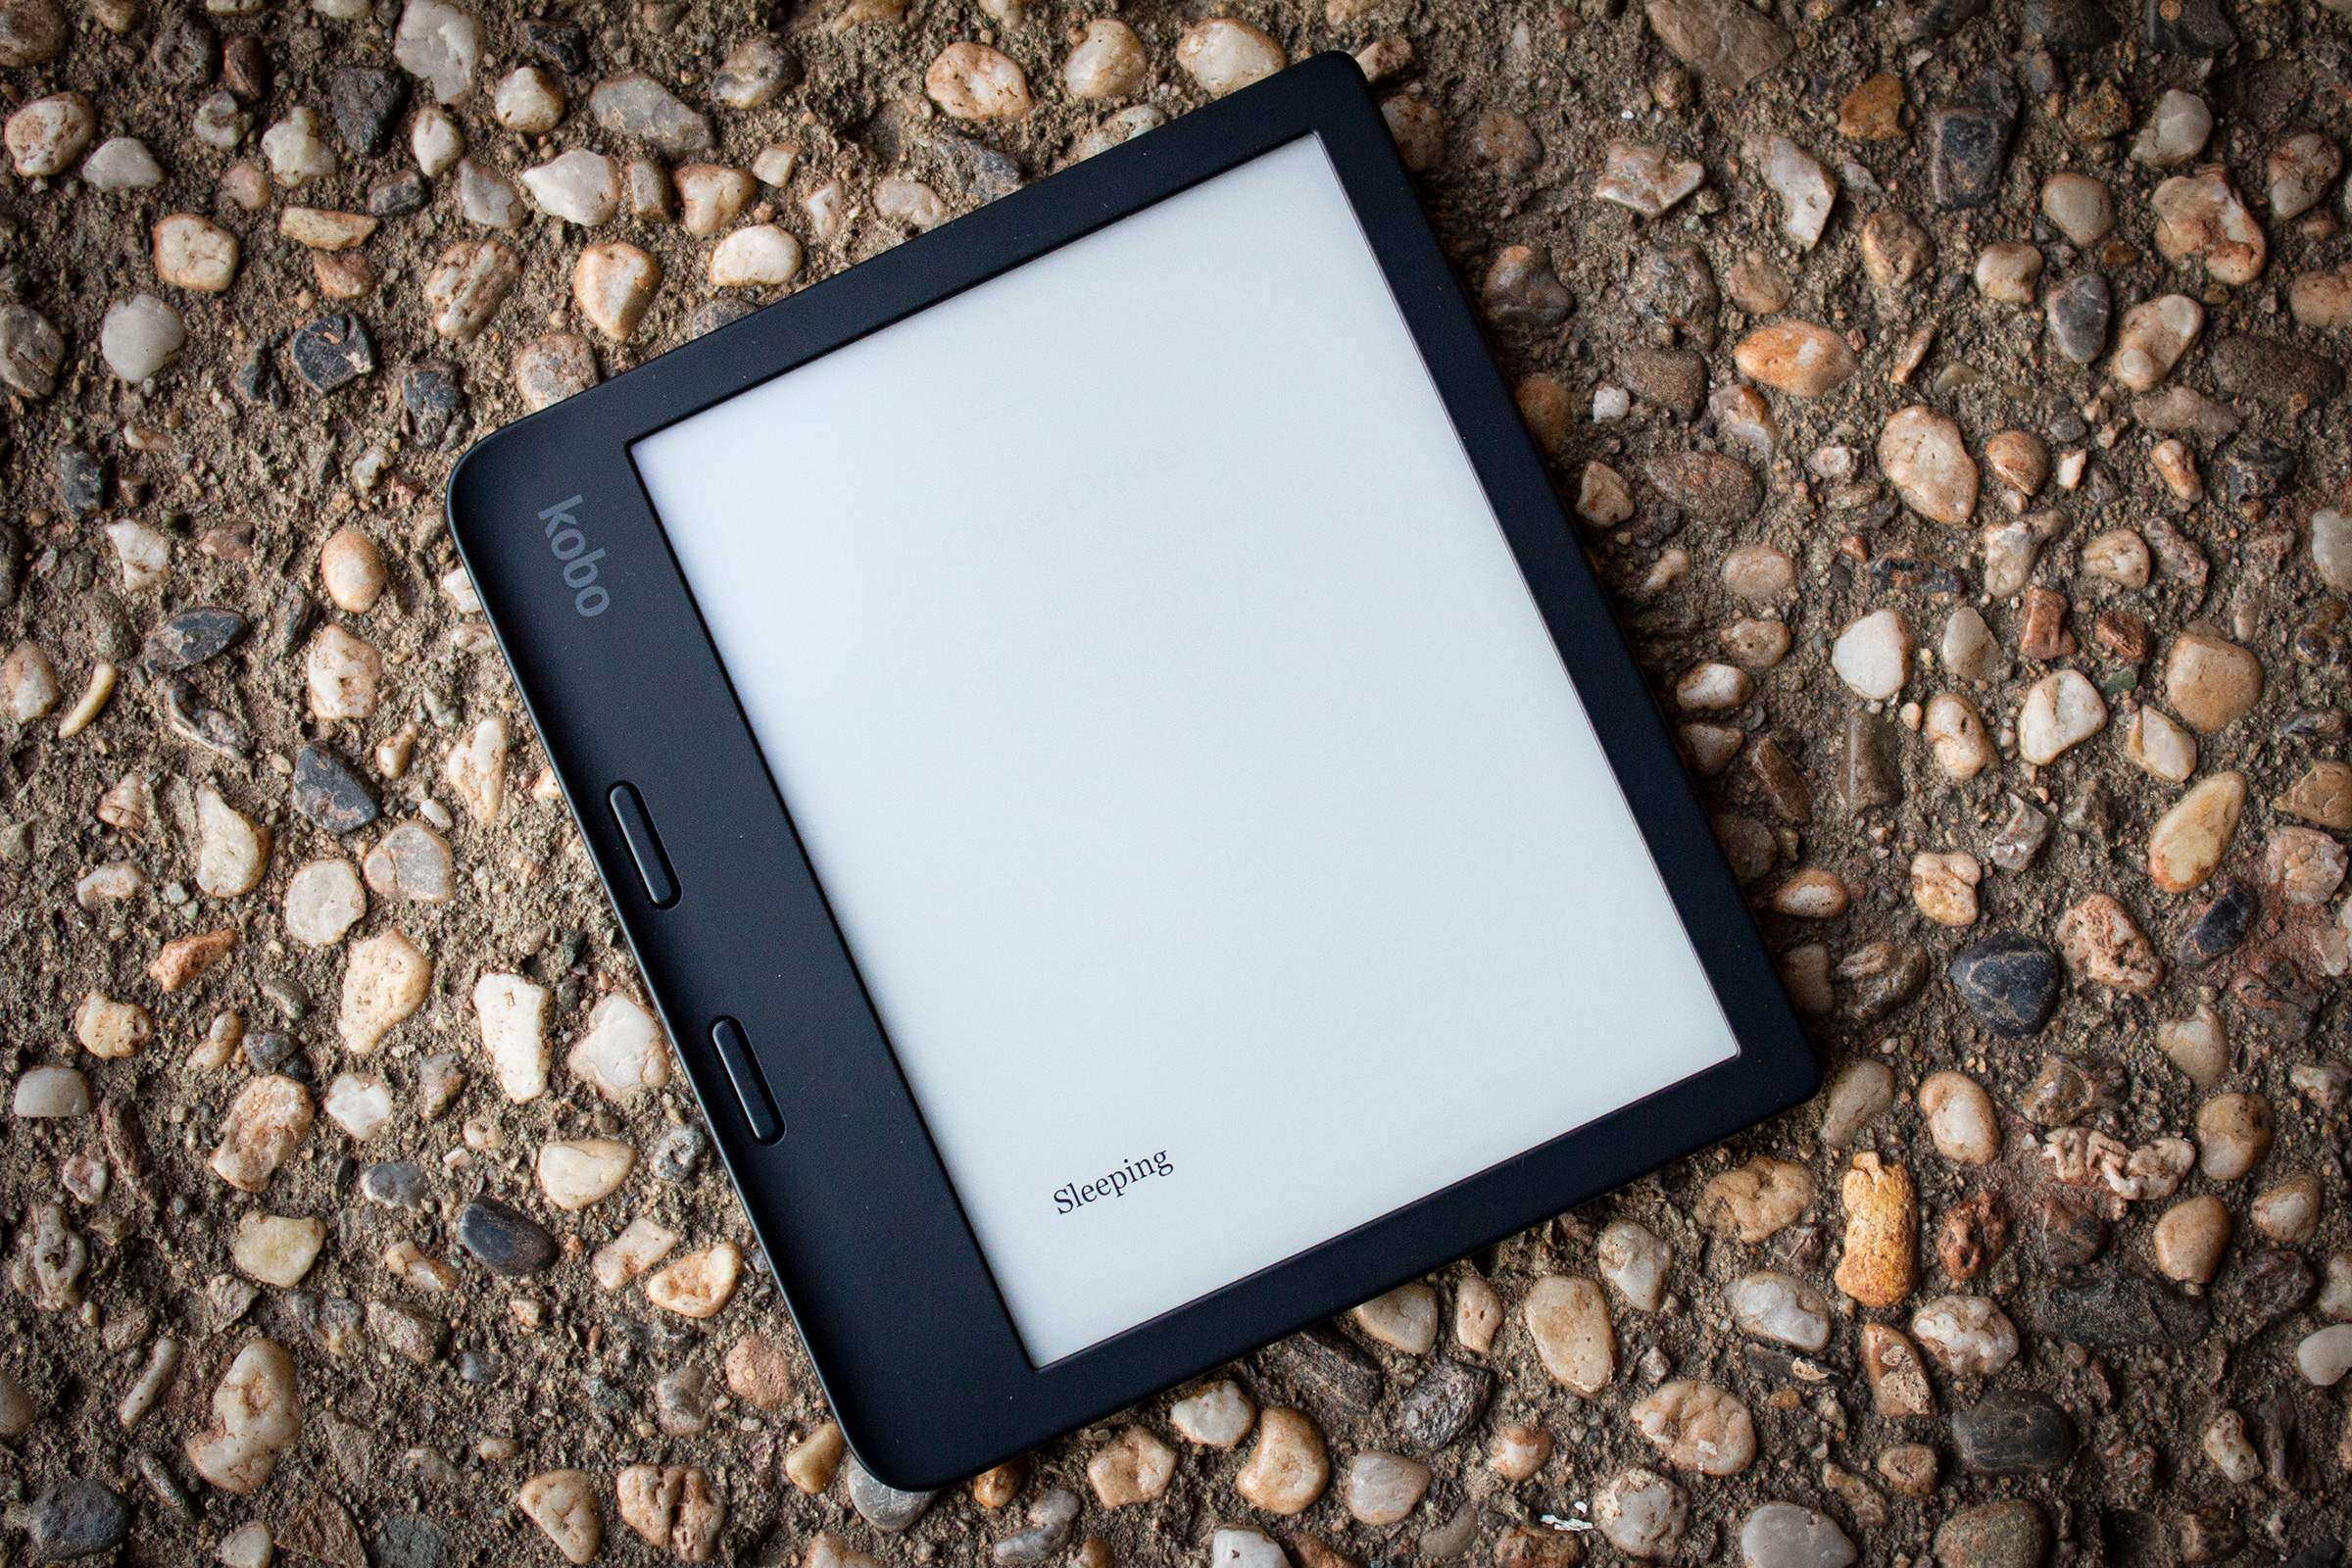 Kobo Libra 2 e-reader in standby mode